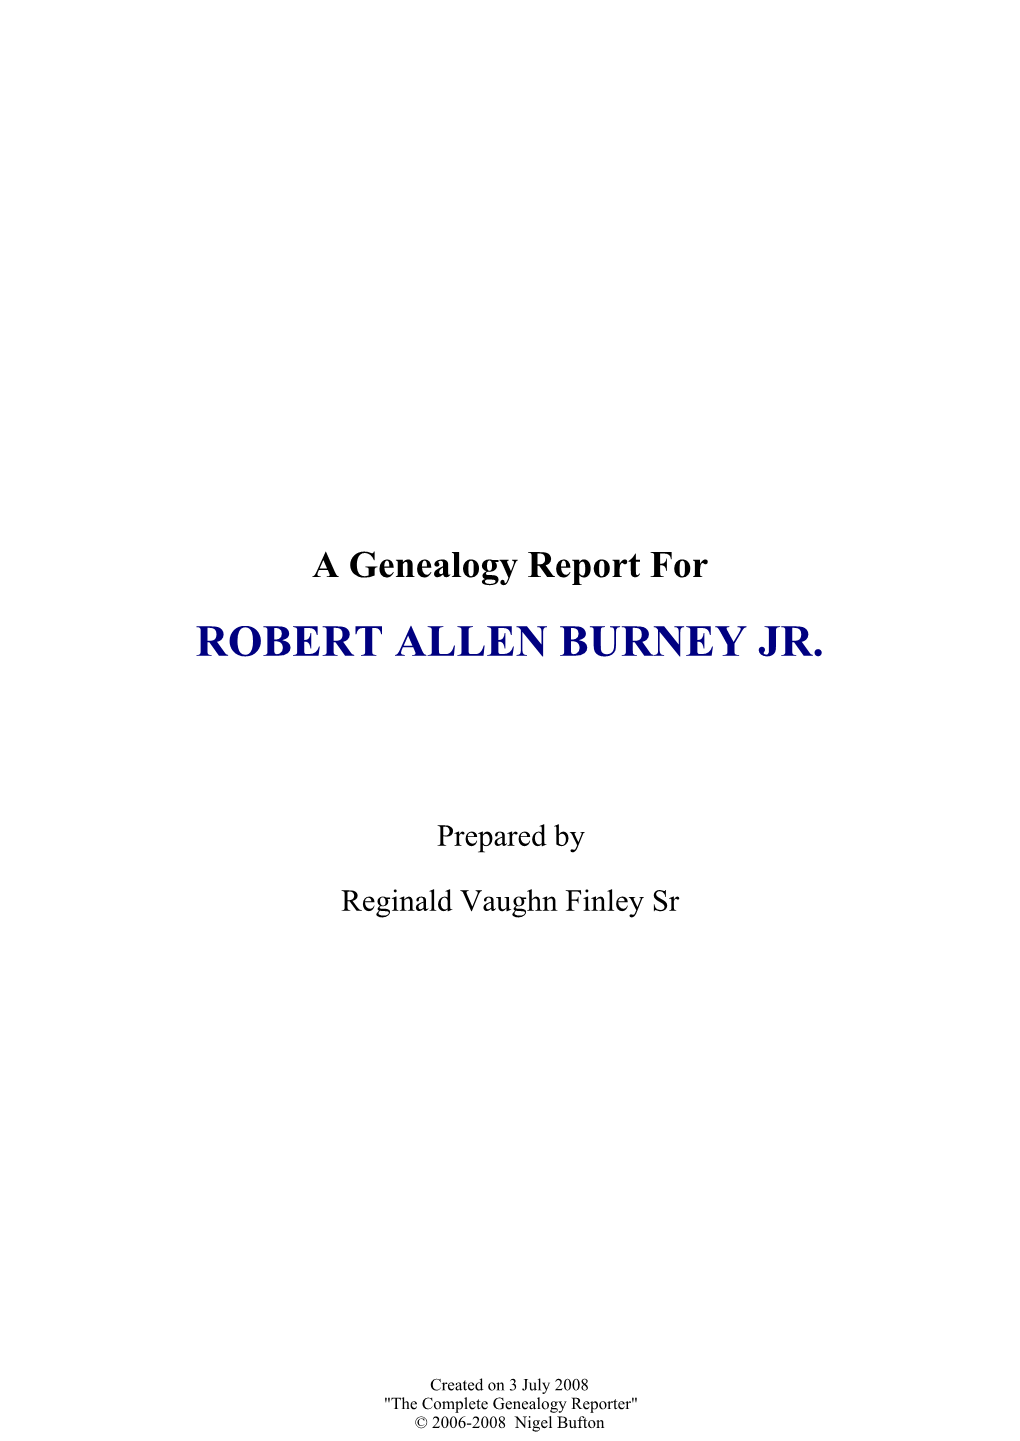 Robert Allen Burney Jr